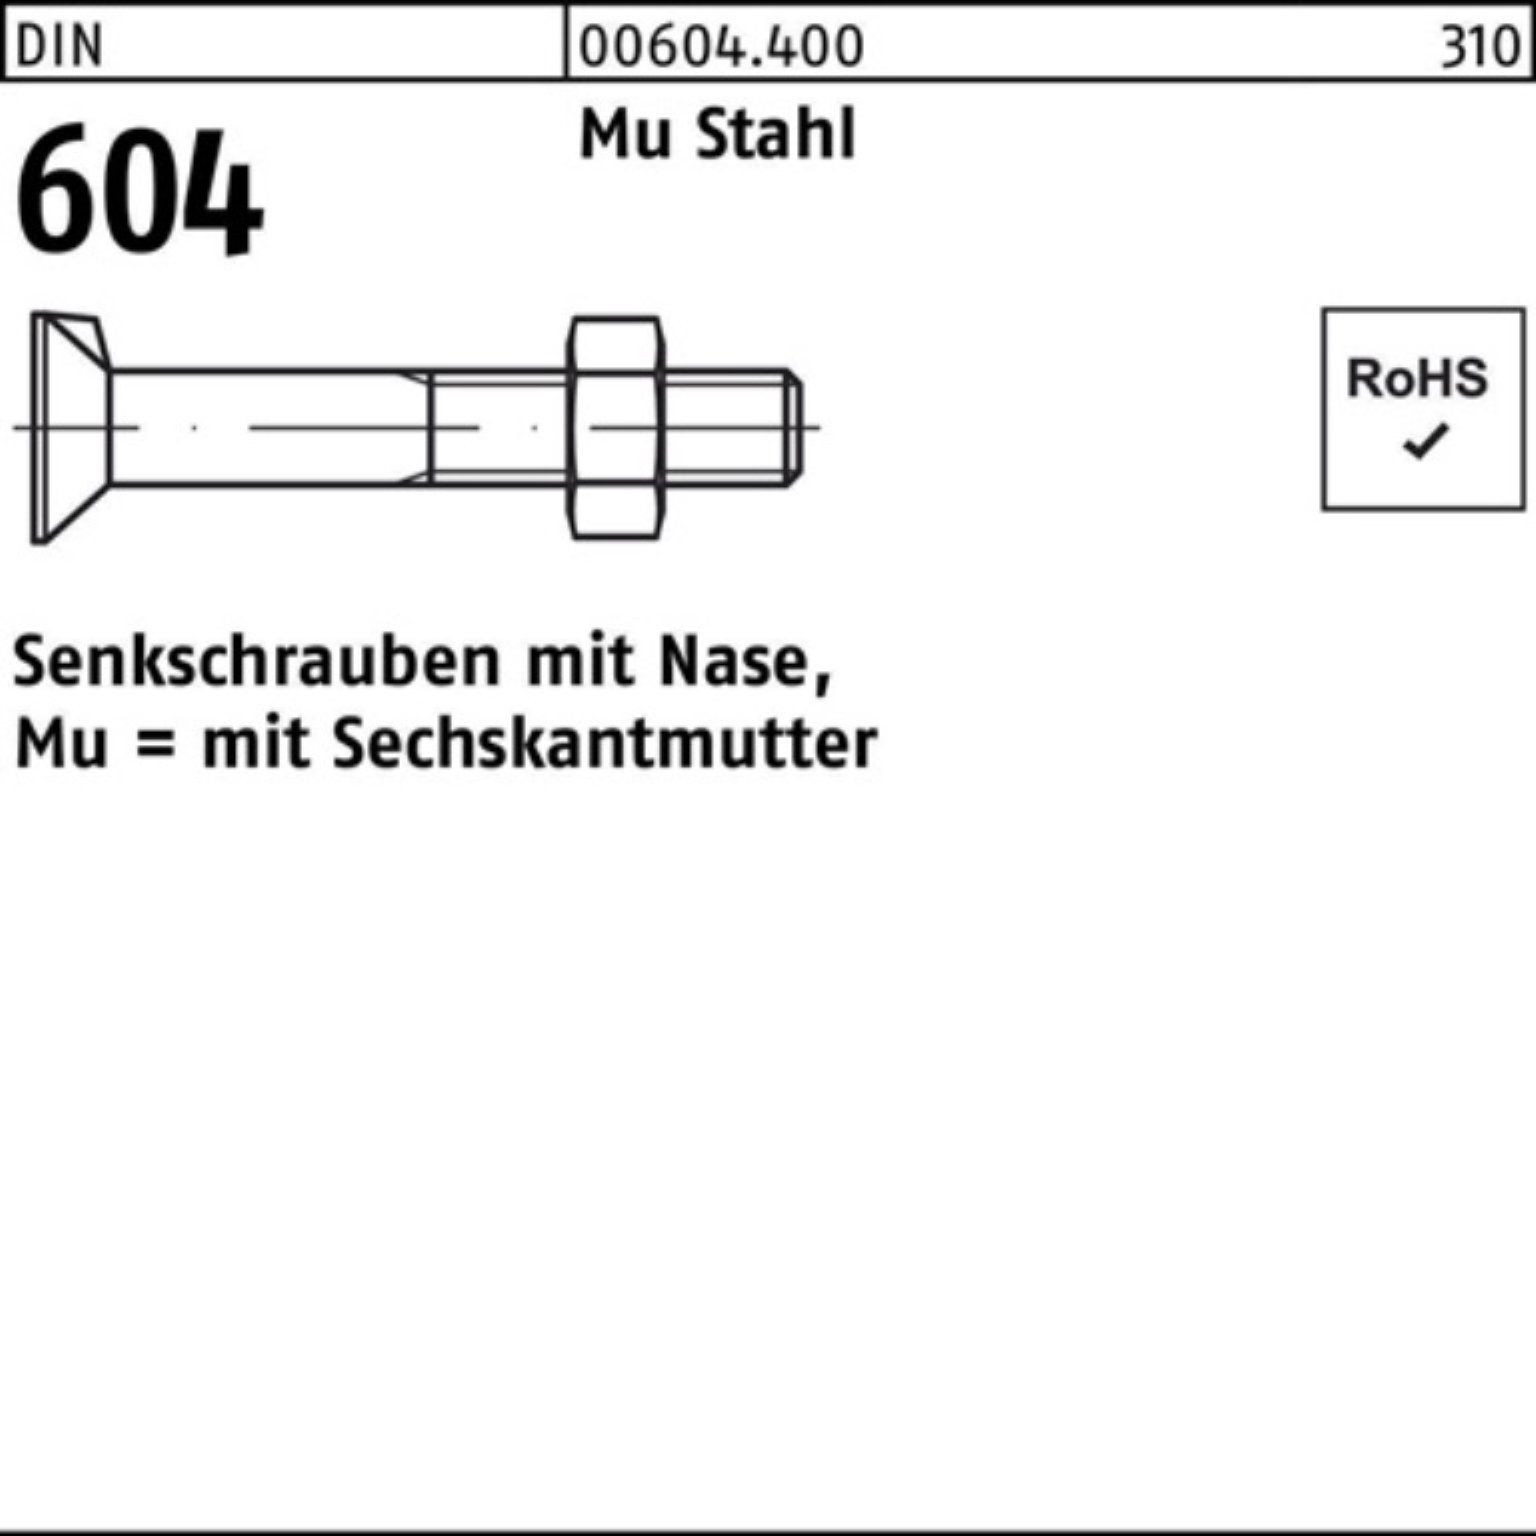 Mu 60 604 DIN Reyher 100er Senkschraube 4.6 Senkschraube Nase/6-ktmutter M12x Stahl Pack 1